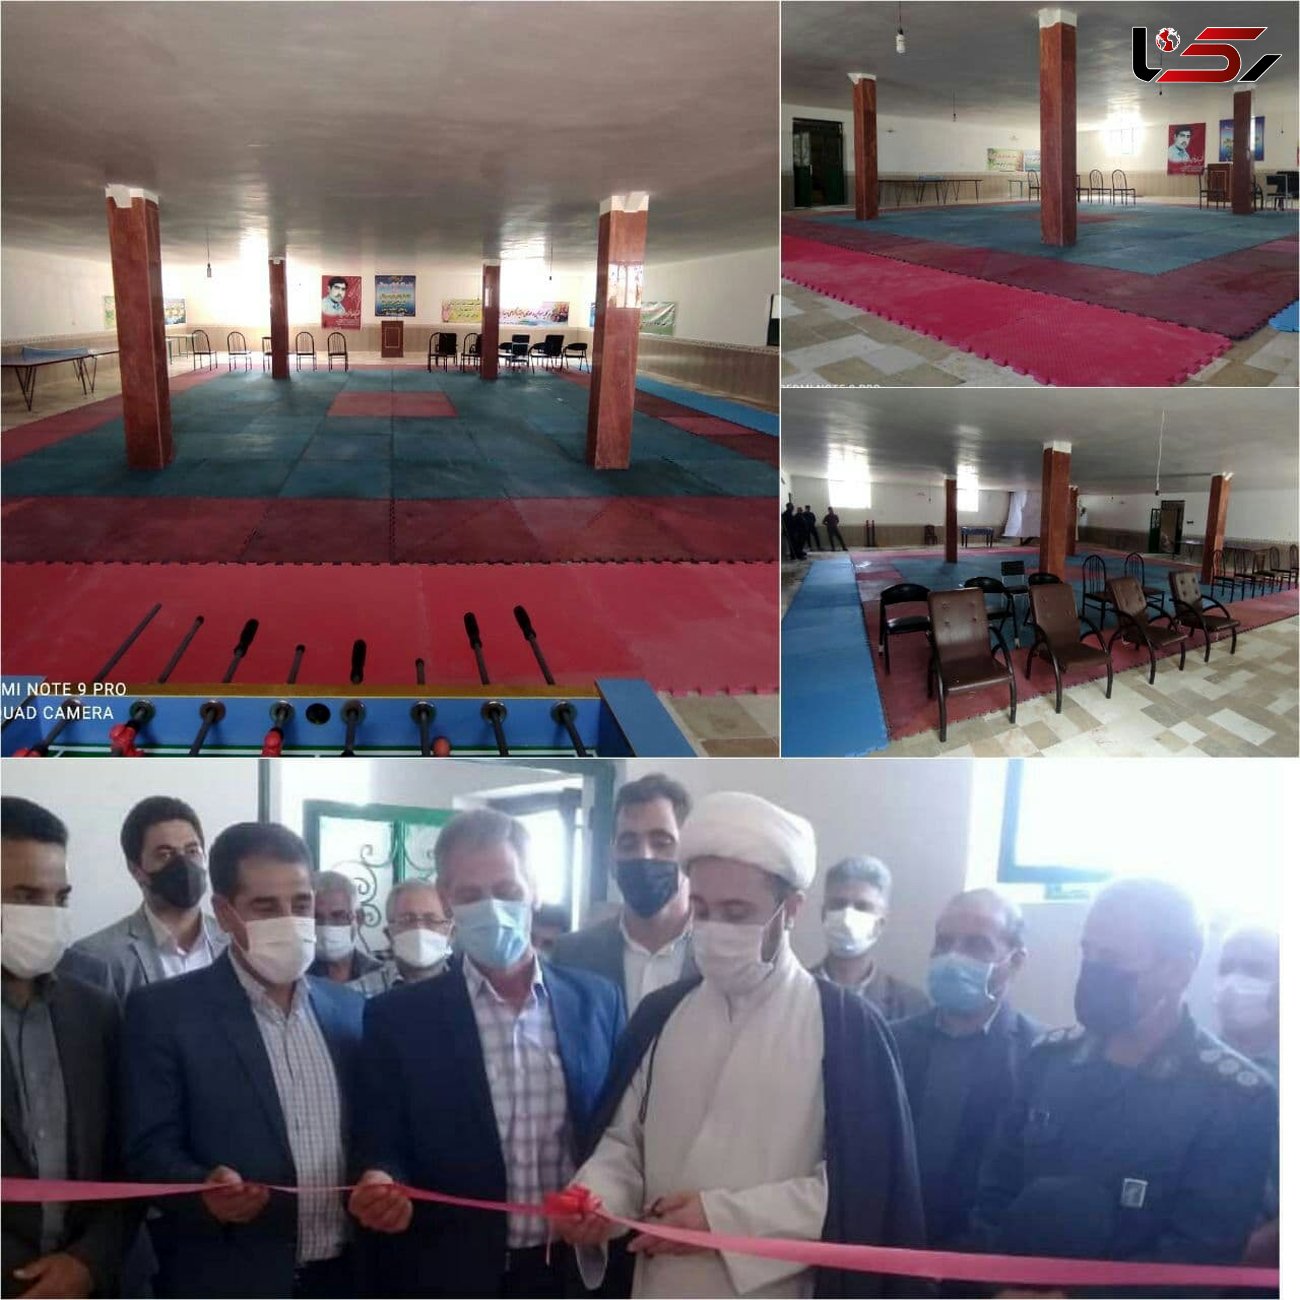 افتتاح اولین خانه تخصصی تکواندو روستایی کشور در شهرستان چار اویماق